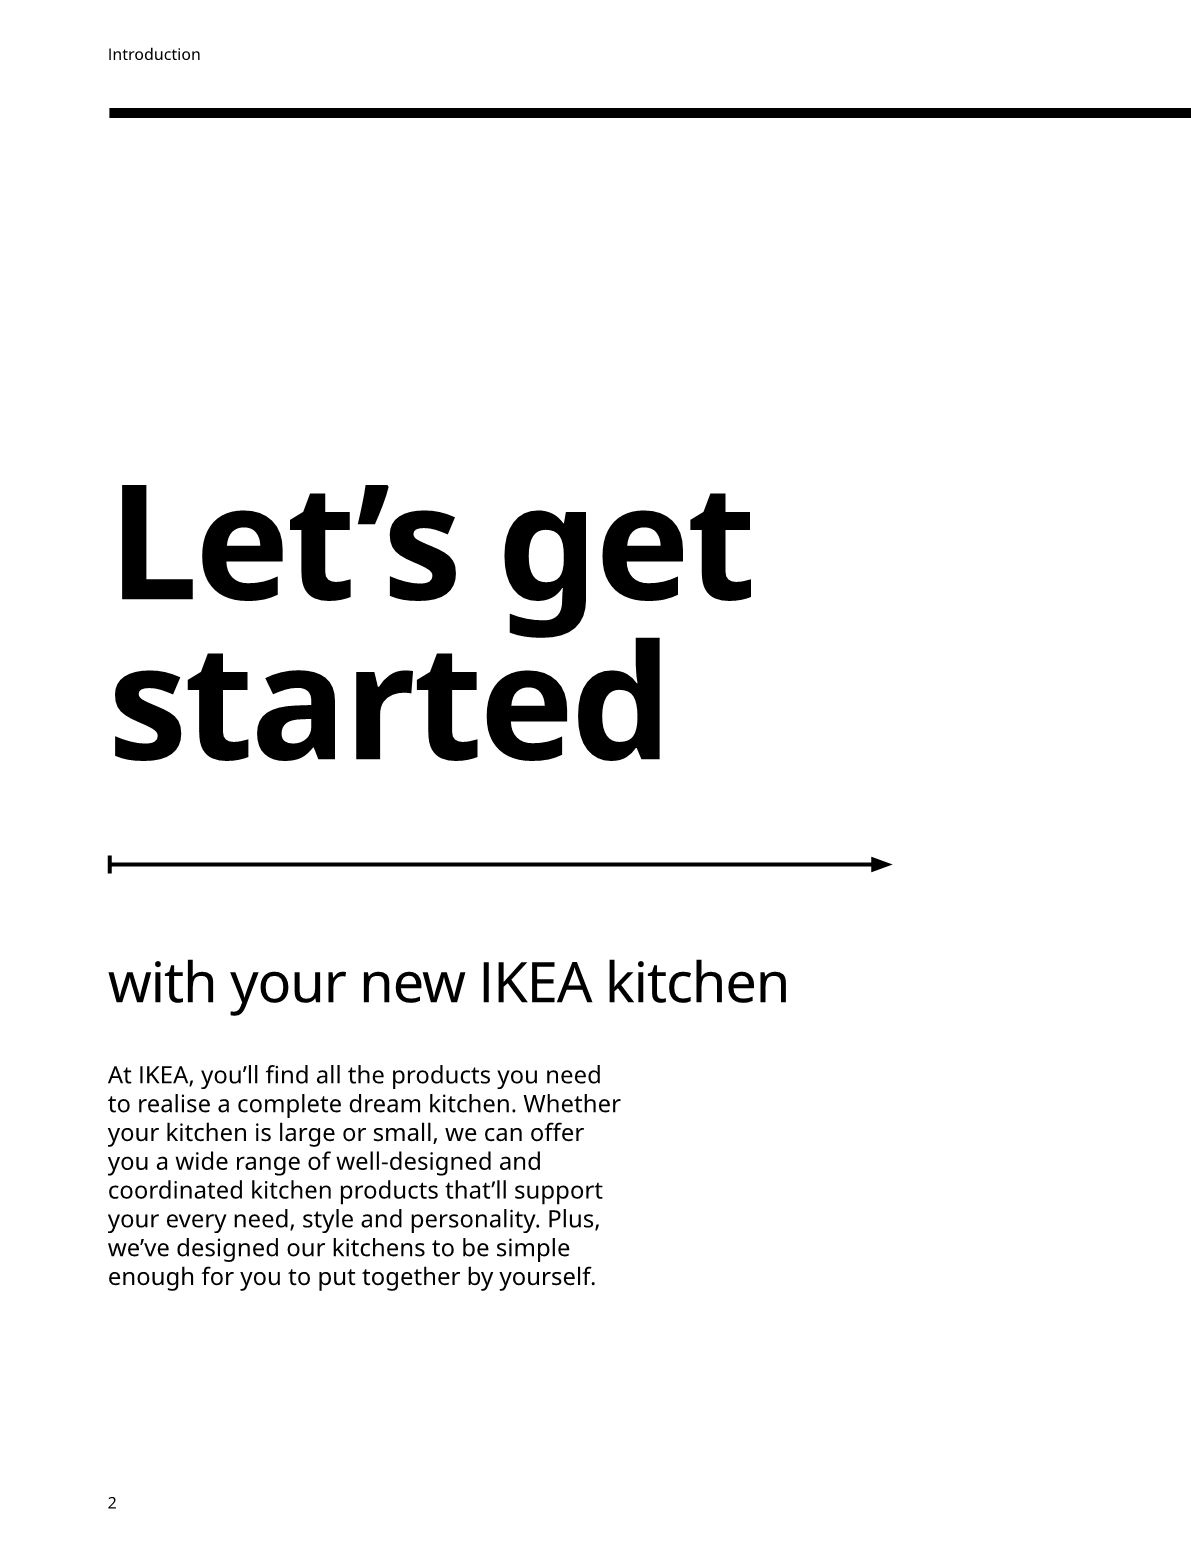 IKEA offer.